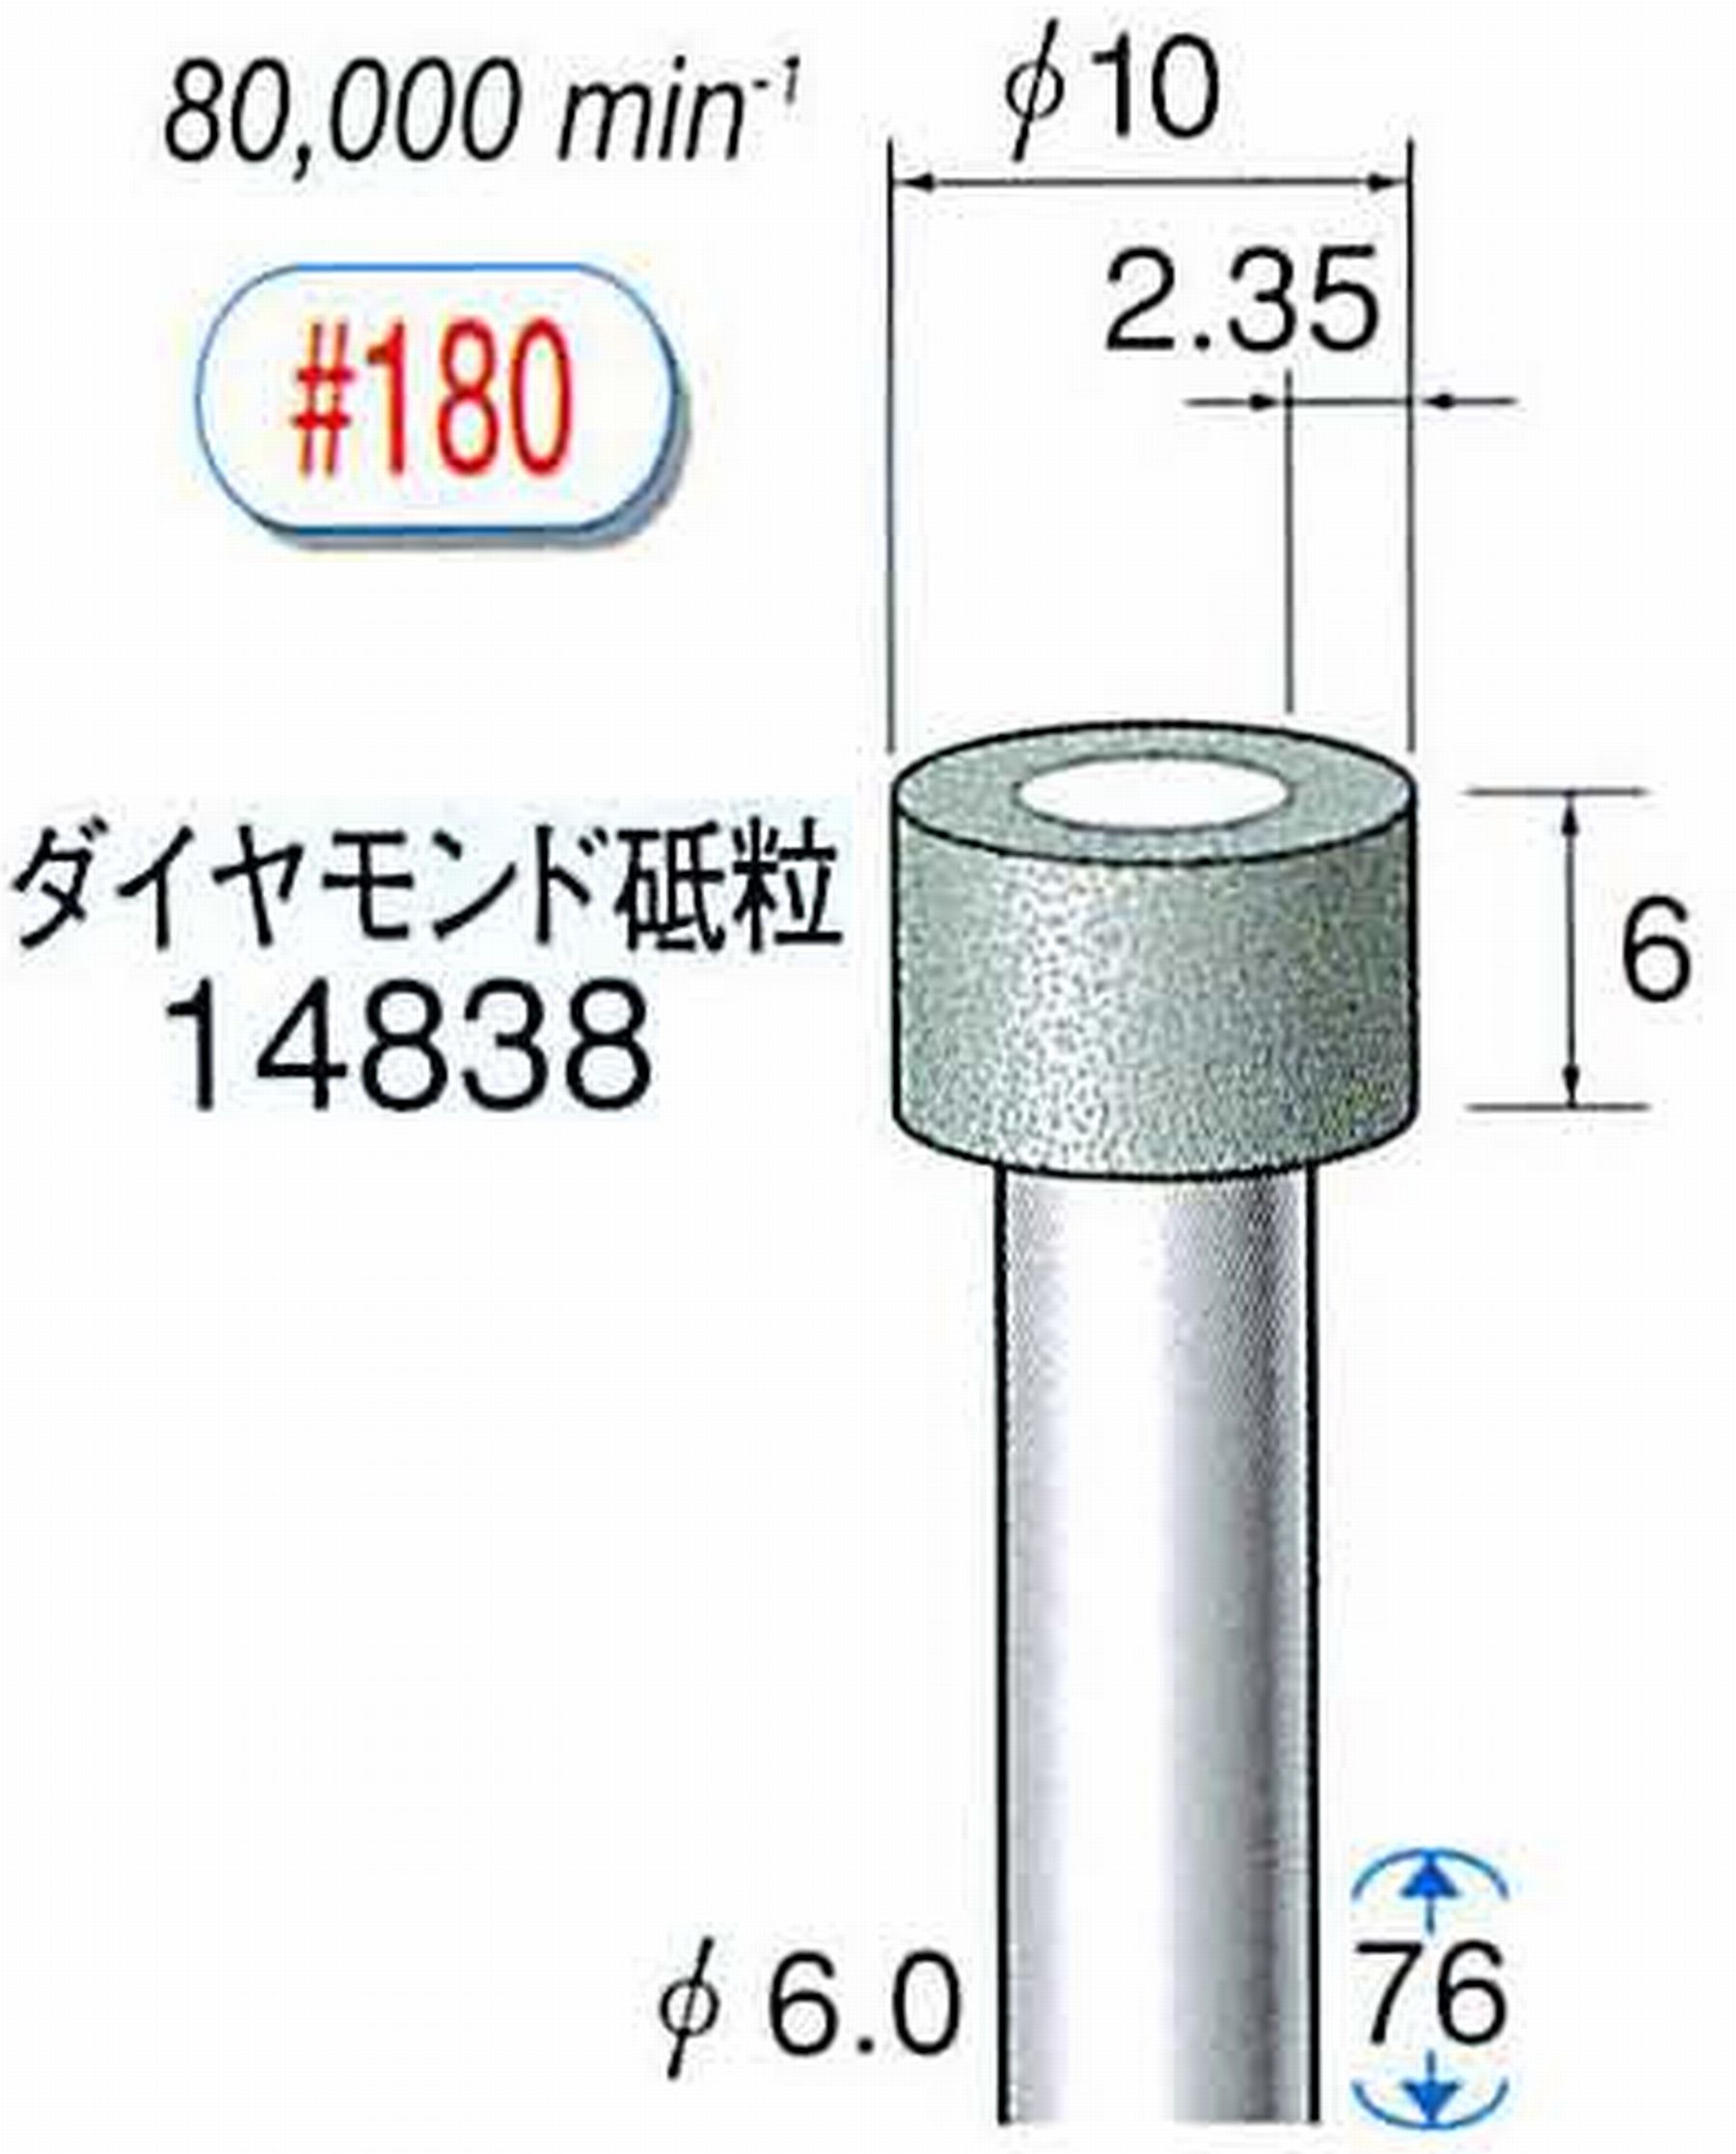 ナカニシ/NAKANISHI ビトリファイドダイヤモンド砥石 ダイヤモンド砥粒 軸径(シャンク)φ6.0mm 14838